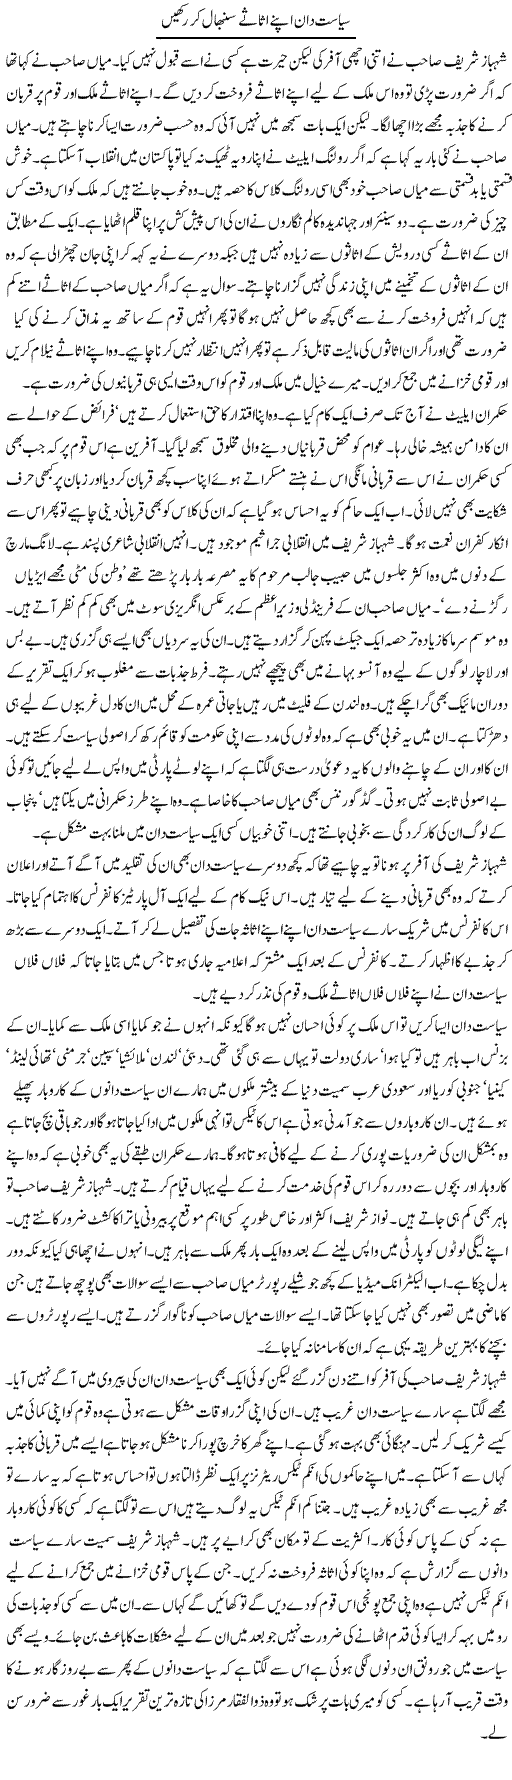 Assets of Politicians Express Column Iyaz Khan 8 March 2011